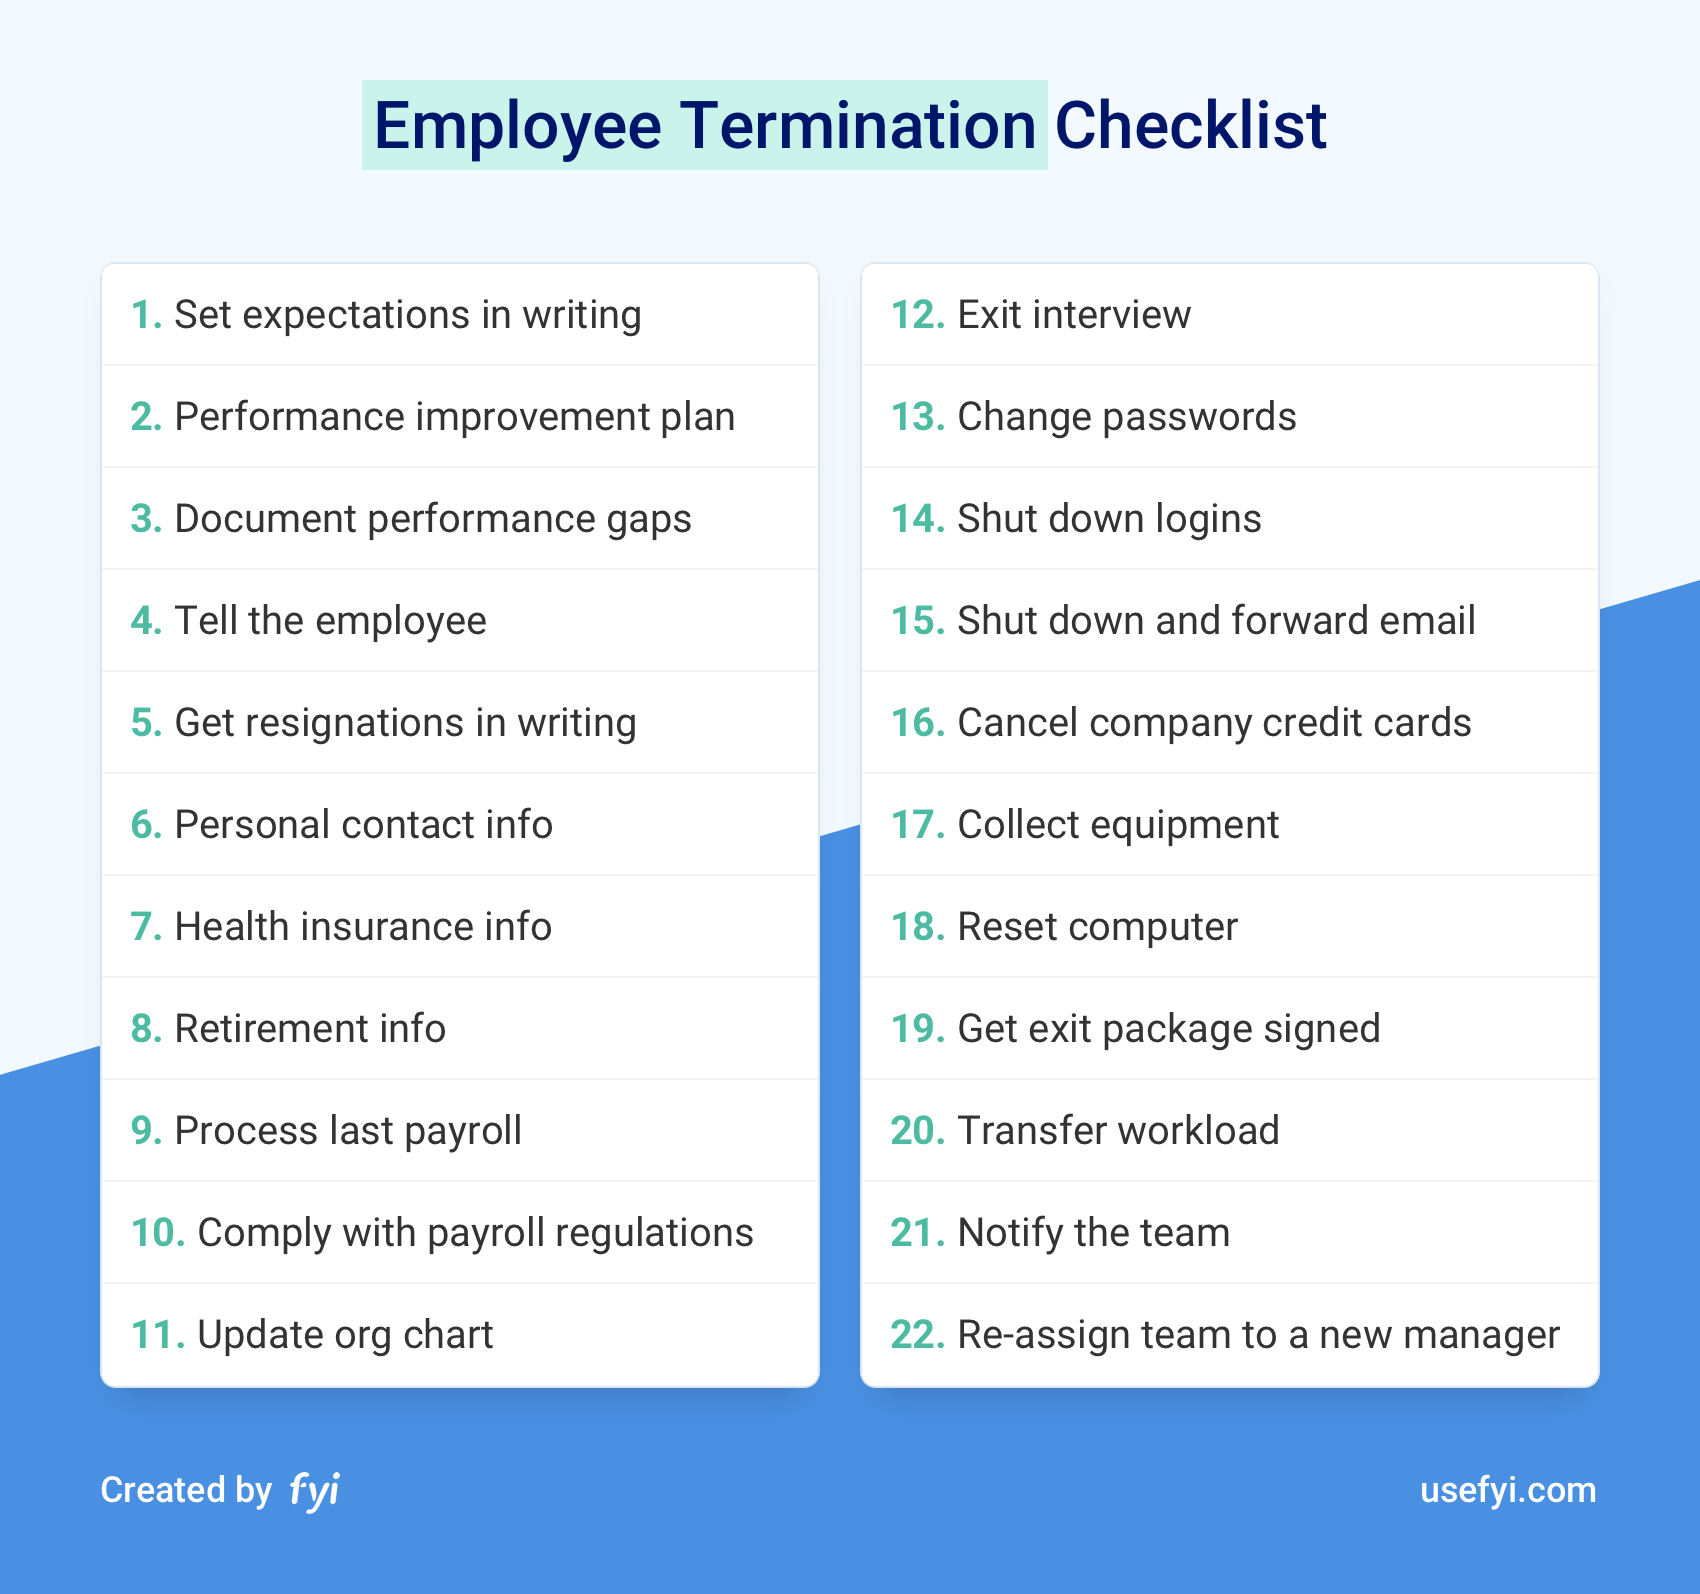 Employee Termination Checklist